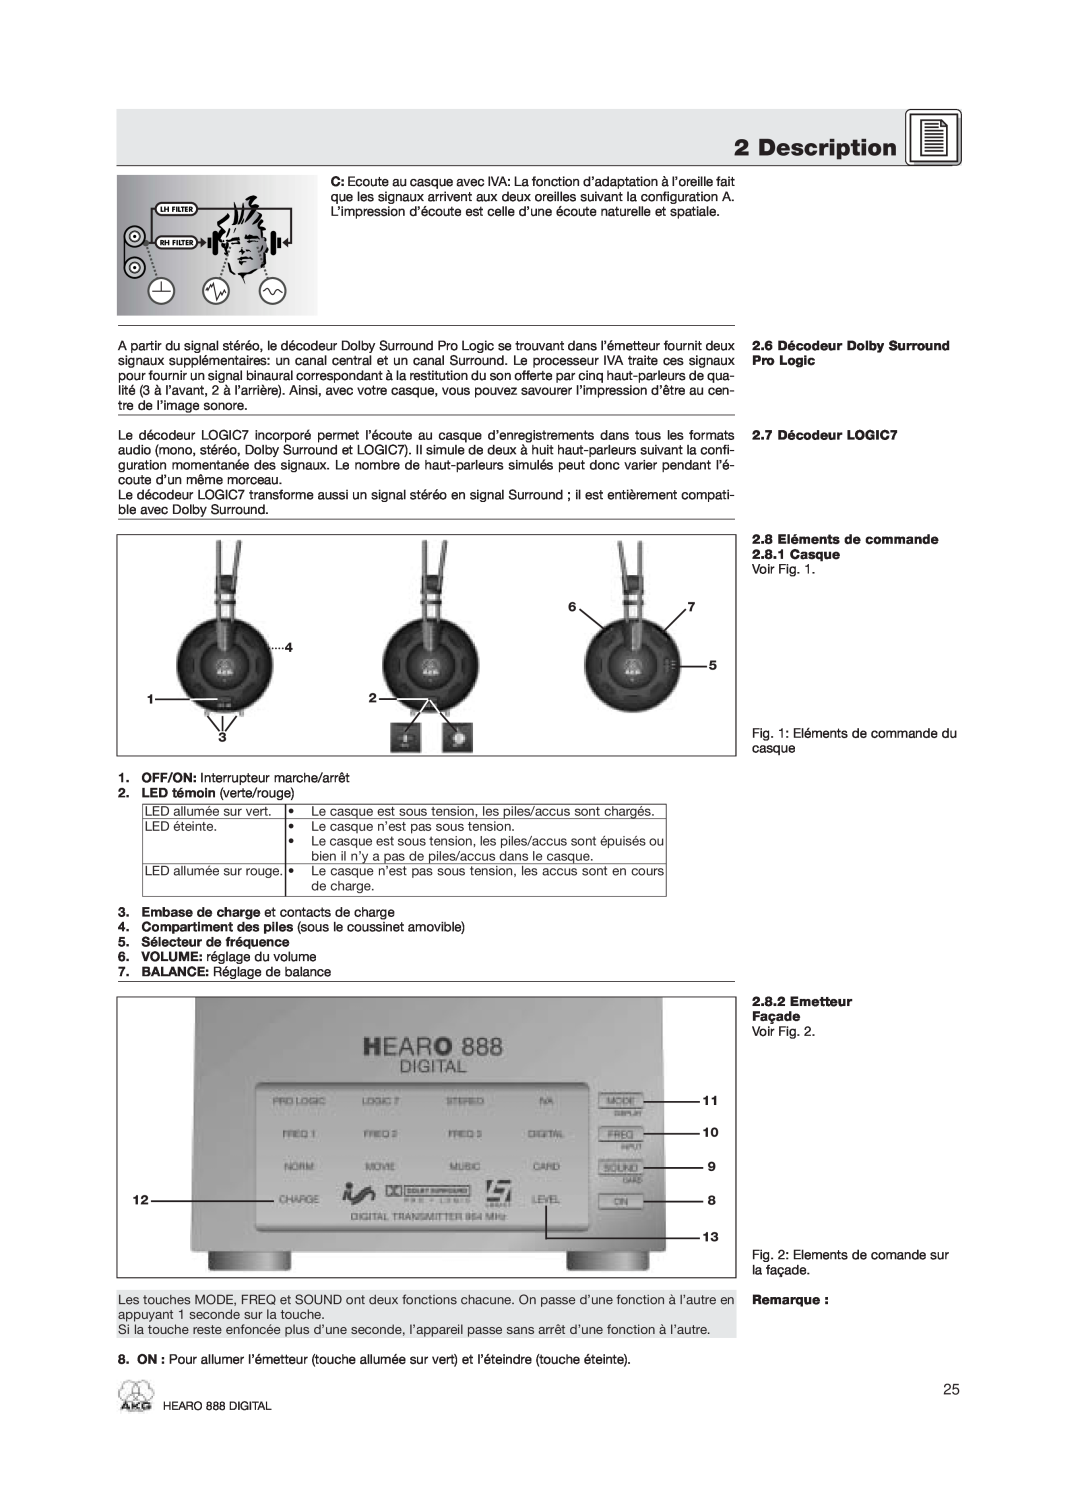 AKG Acoustics HEARO 888 specifications Description, 2.6 Décodeur Dolby Surround 